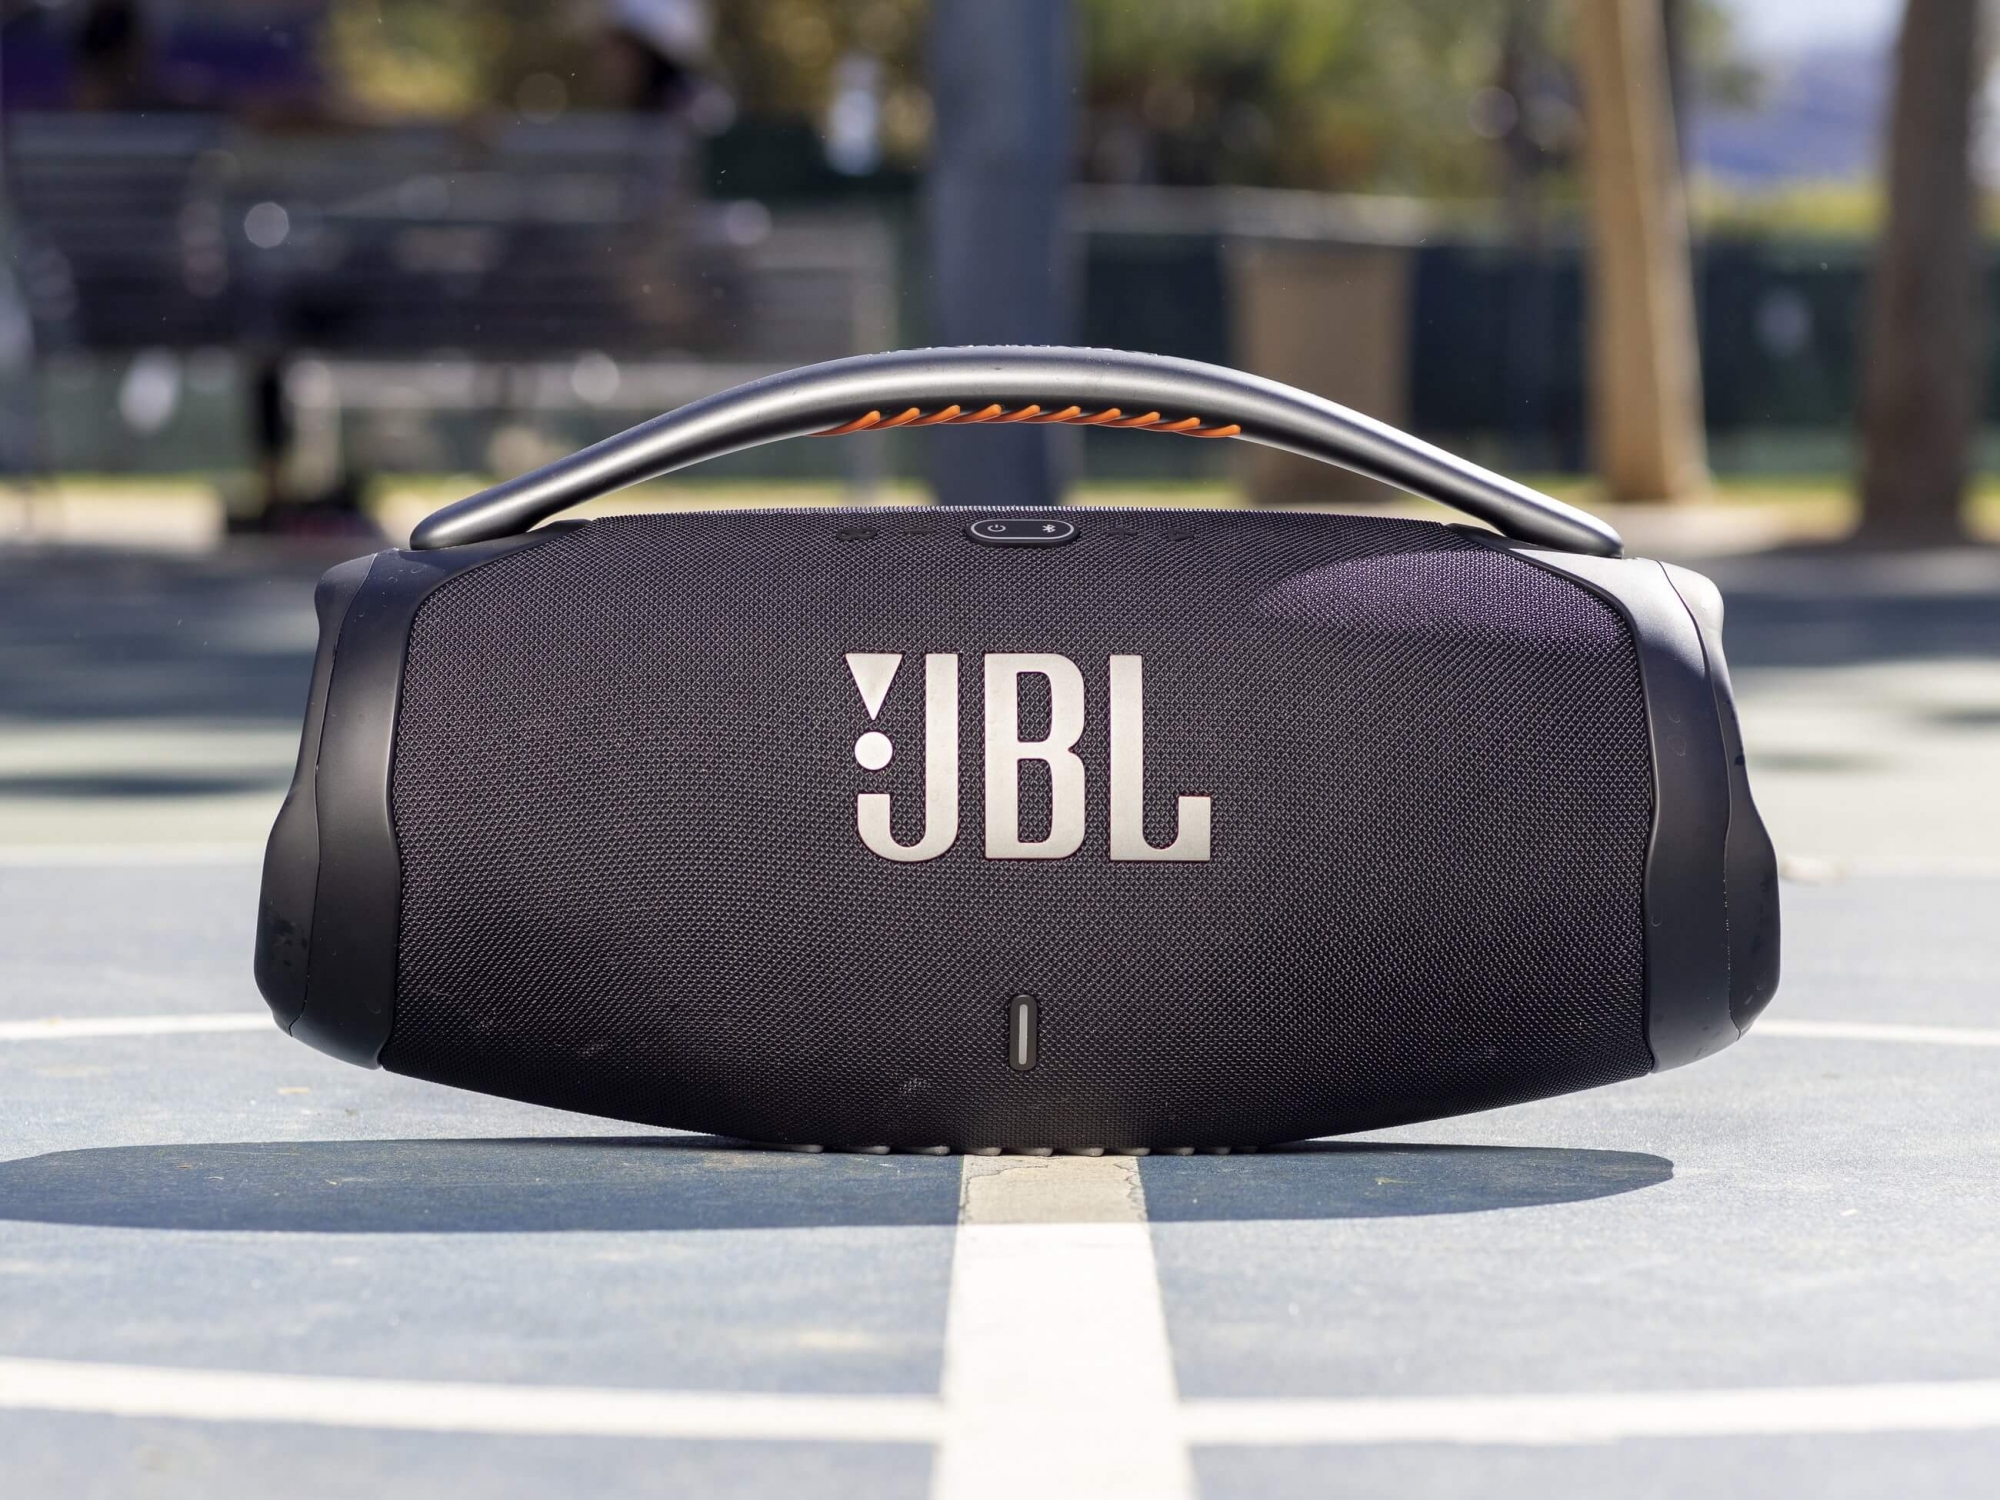 JBL Boombox 3. JBL Boombox 3 АЧХ. JBL Boombox 3 без кожуха. JBL Boombox 3 Wi-Fi характеристики. Jbl boombox 3 цены